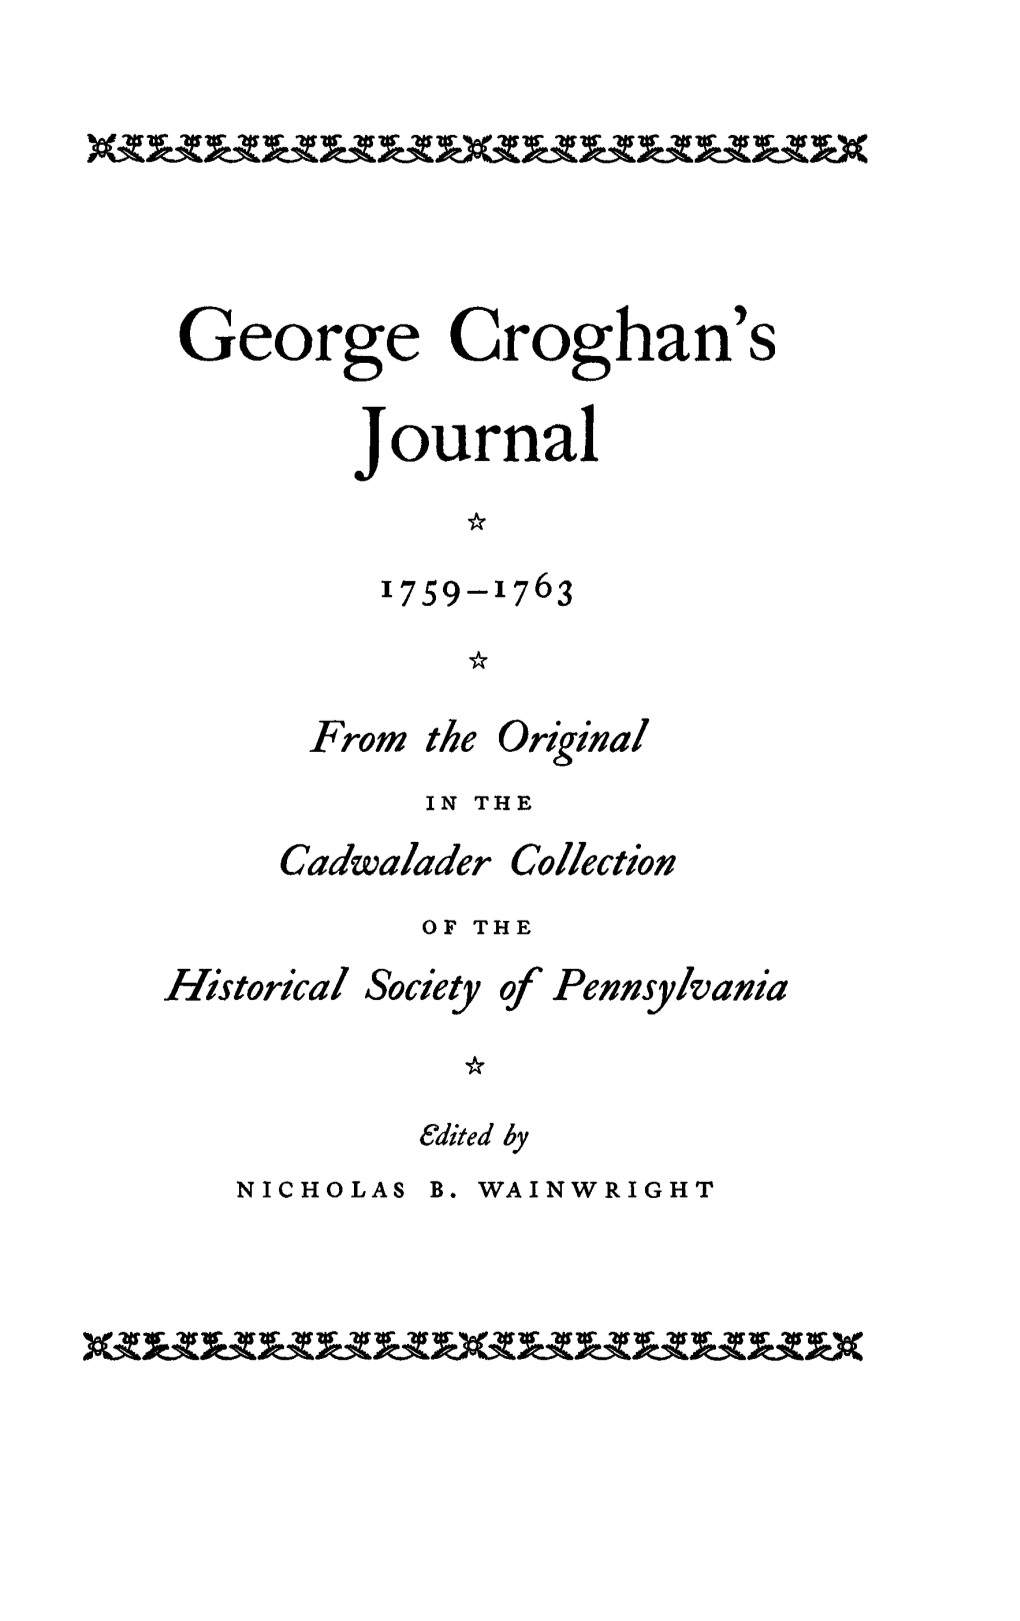 George Croghan's Journal